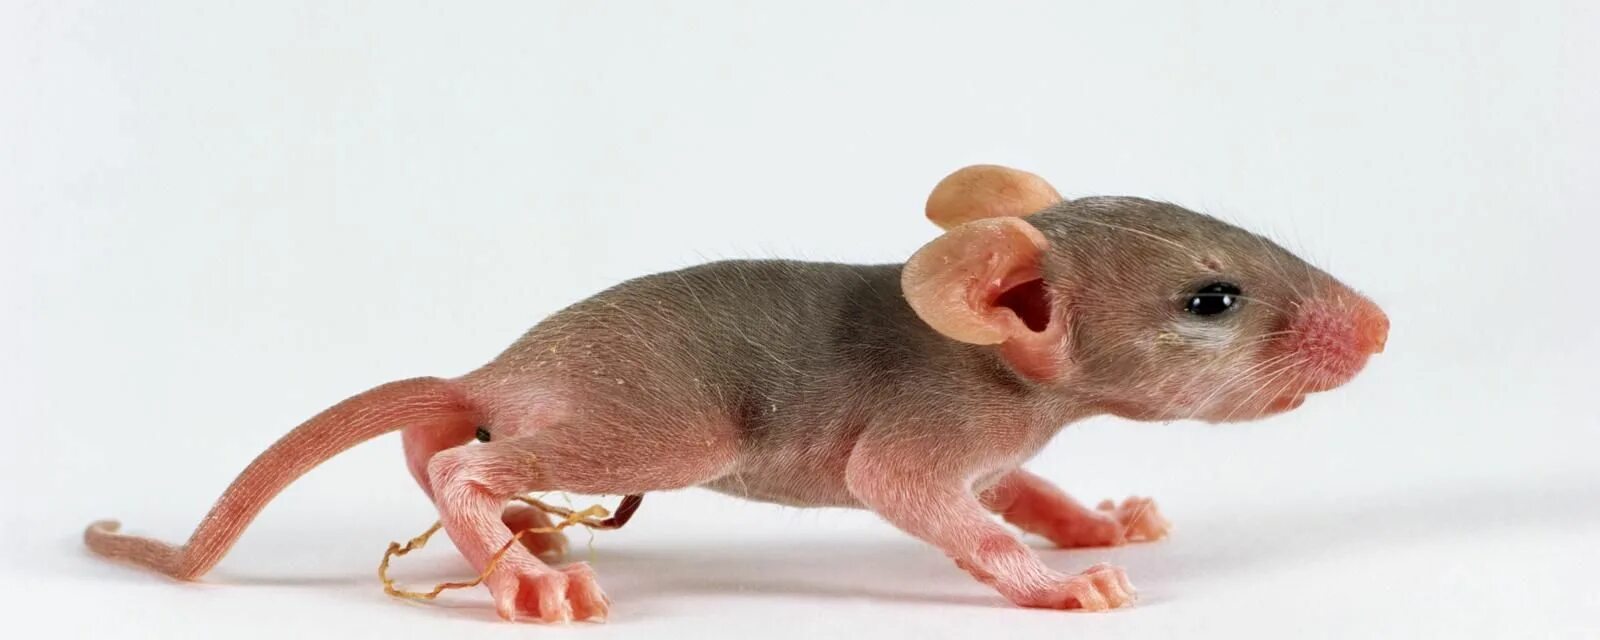 Развитие мышей. Акомис иглистая мышь. Детеныш мыши. Маленькие крысы.